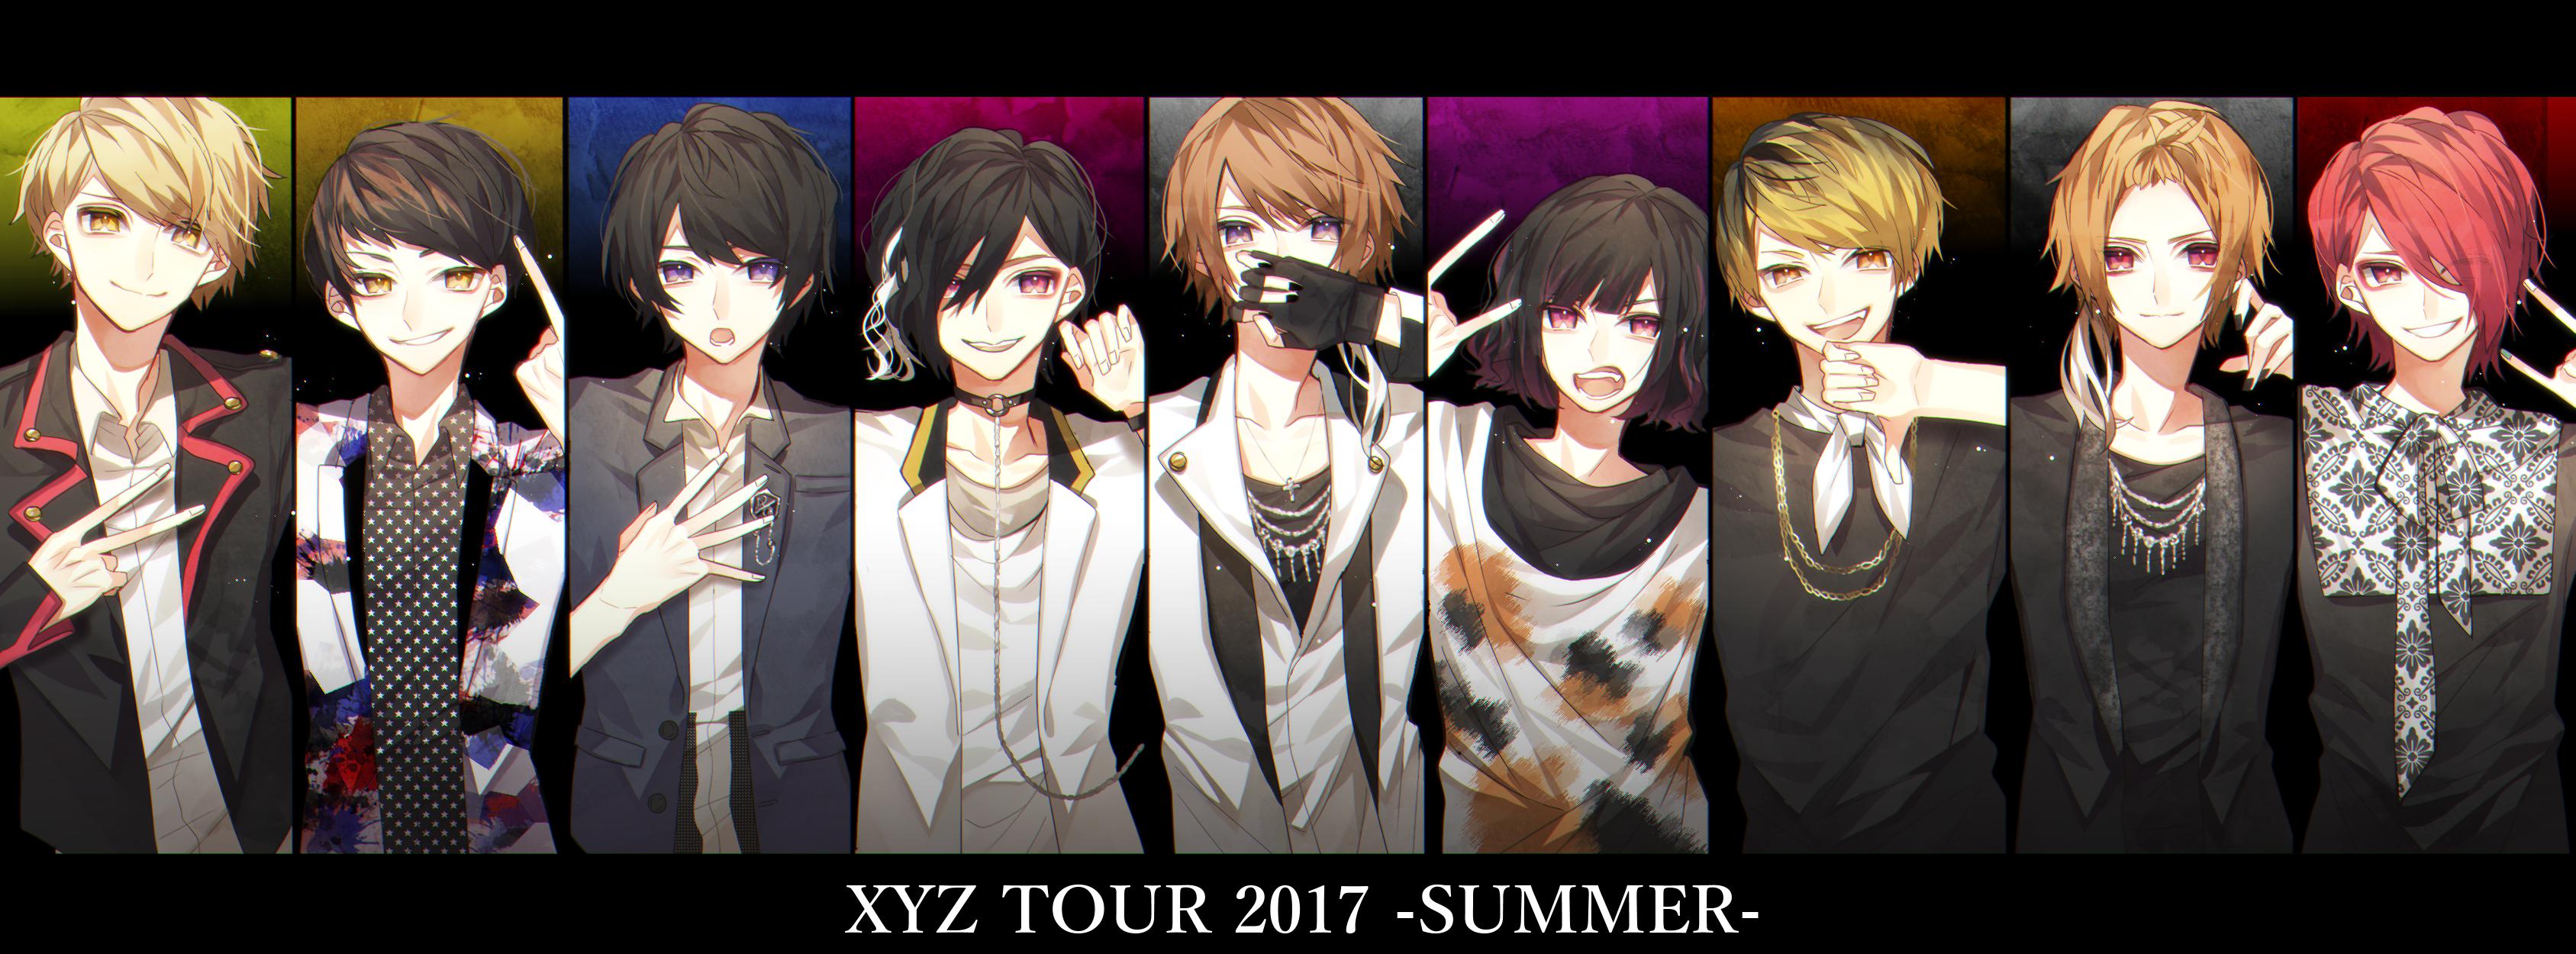 XYZ TOUR插画图片壁纸